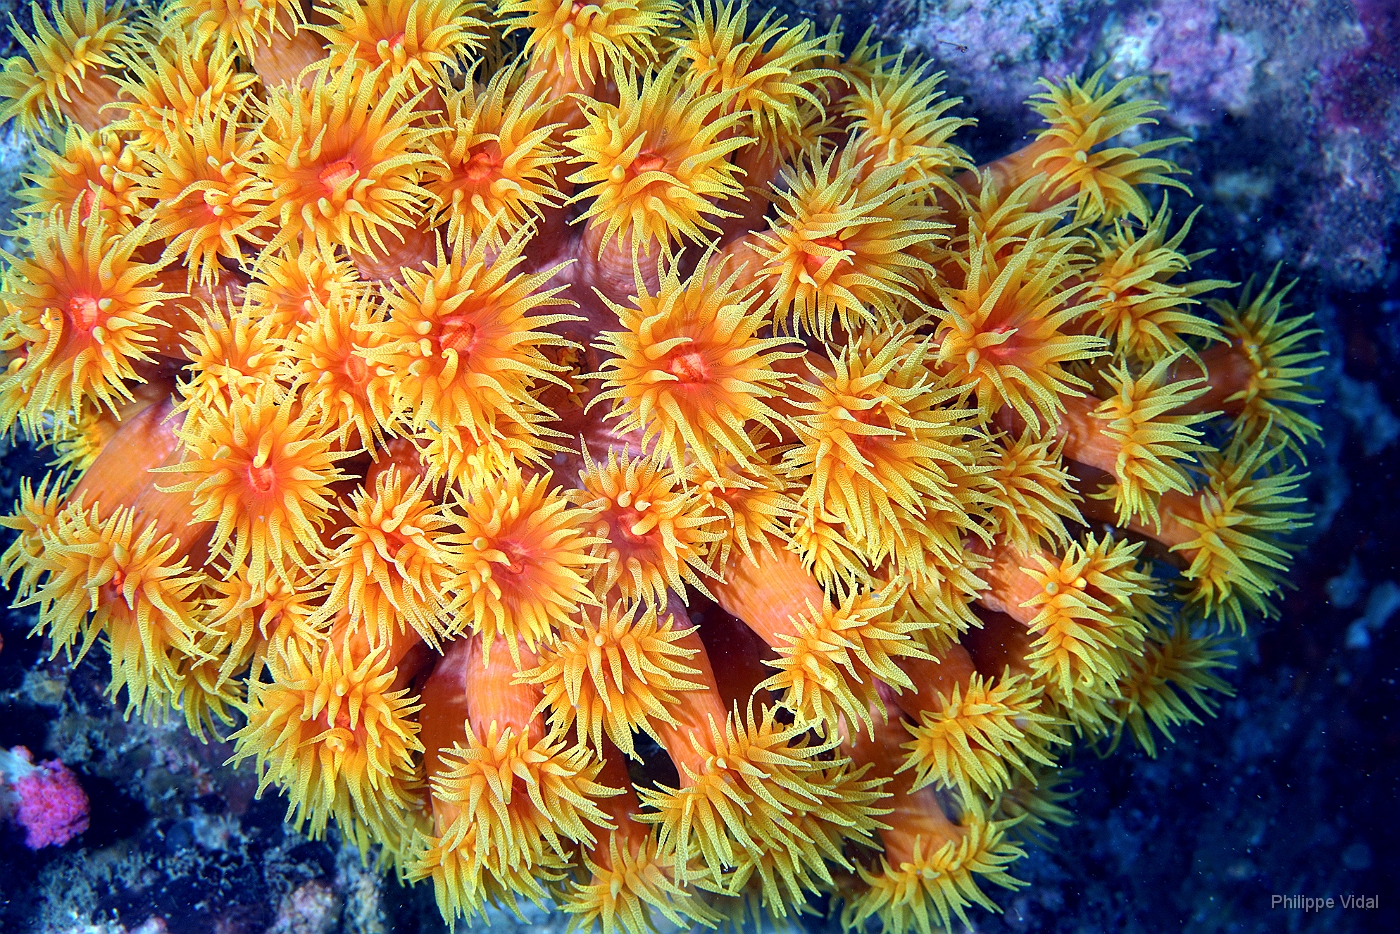 Birmanie - Mergui - 2018 - DSC02688 - Orange Sun Coral - Tubastree aurea - Tubastrea Aurea.jpg